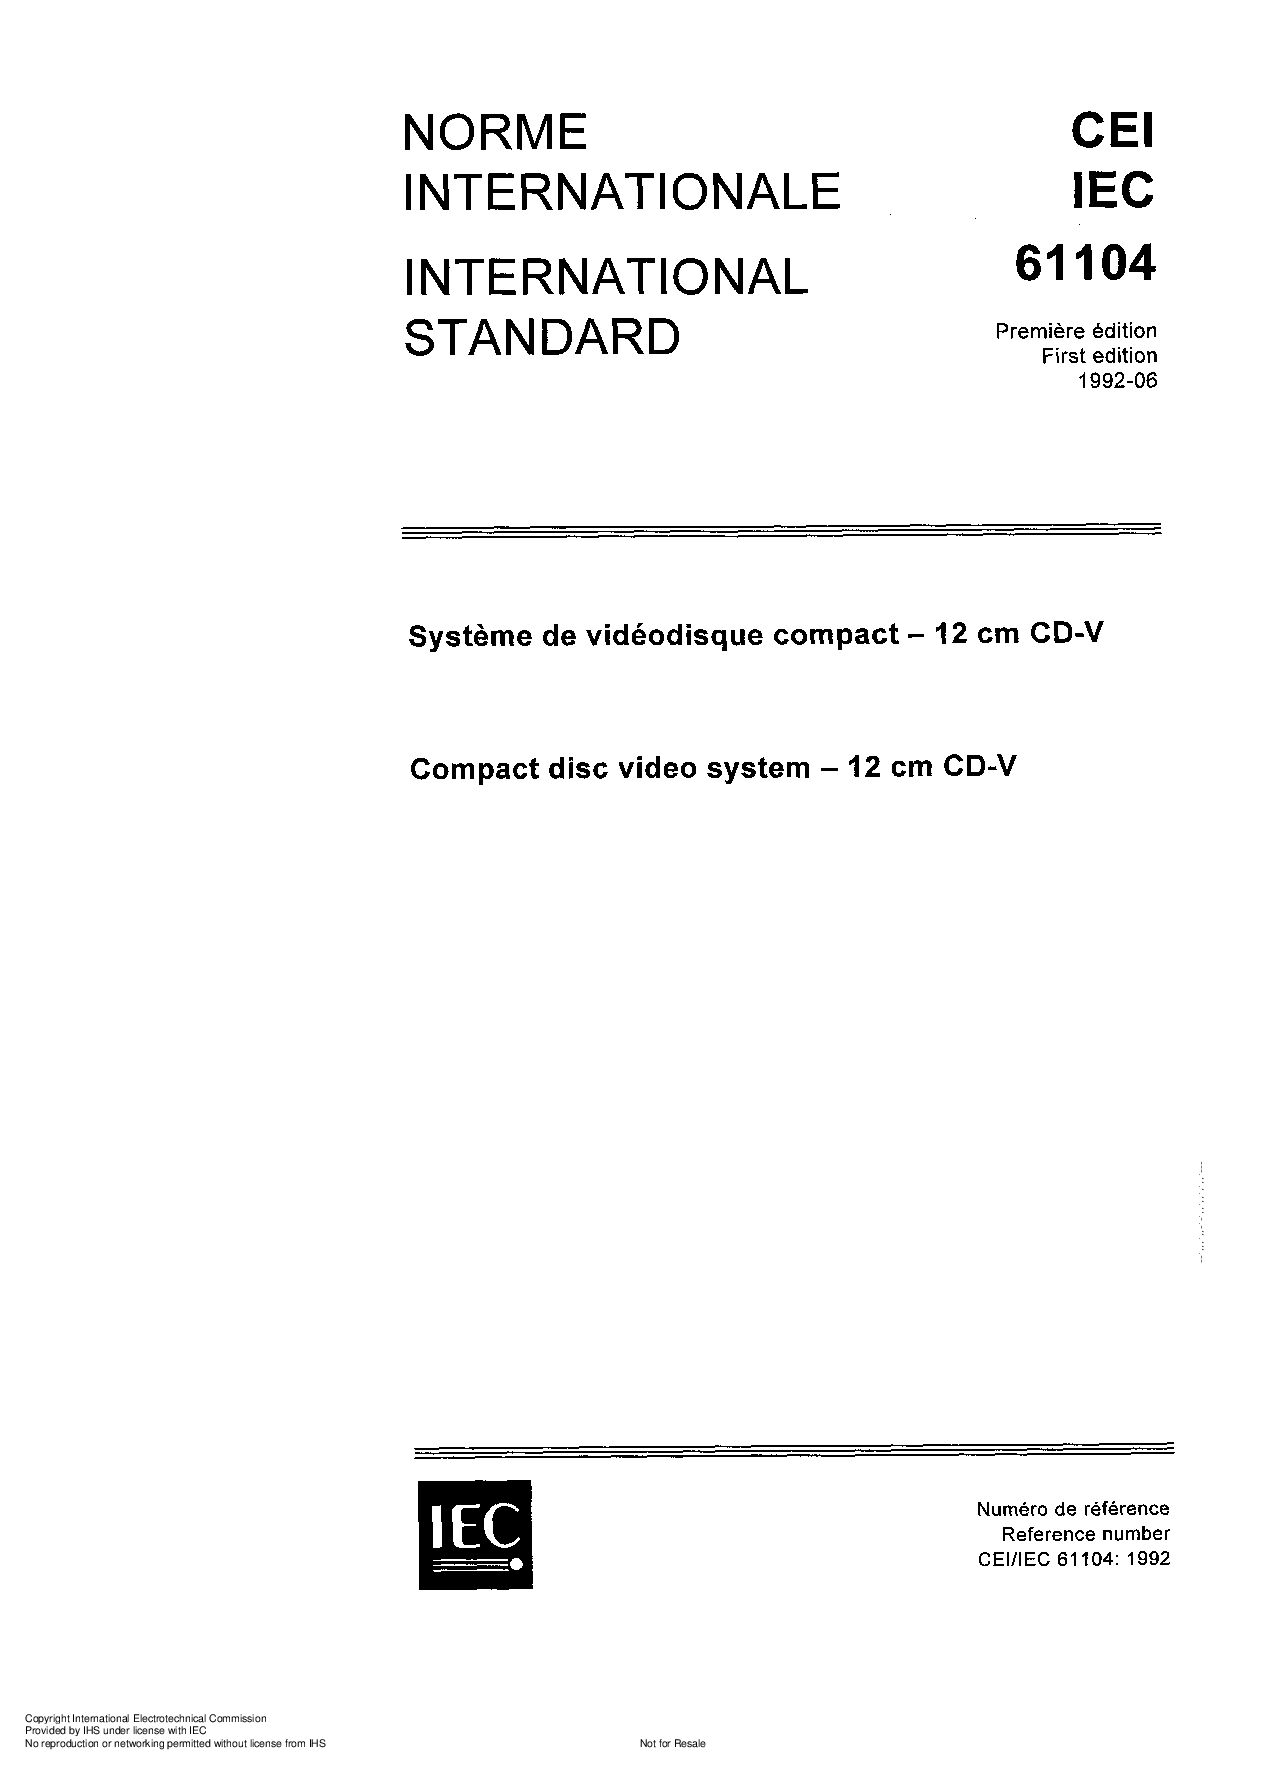 IEC 61104:1992